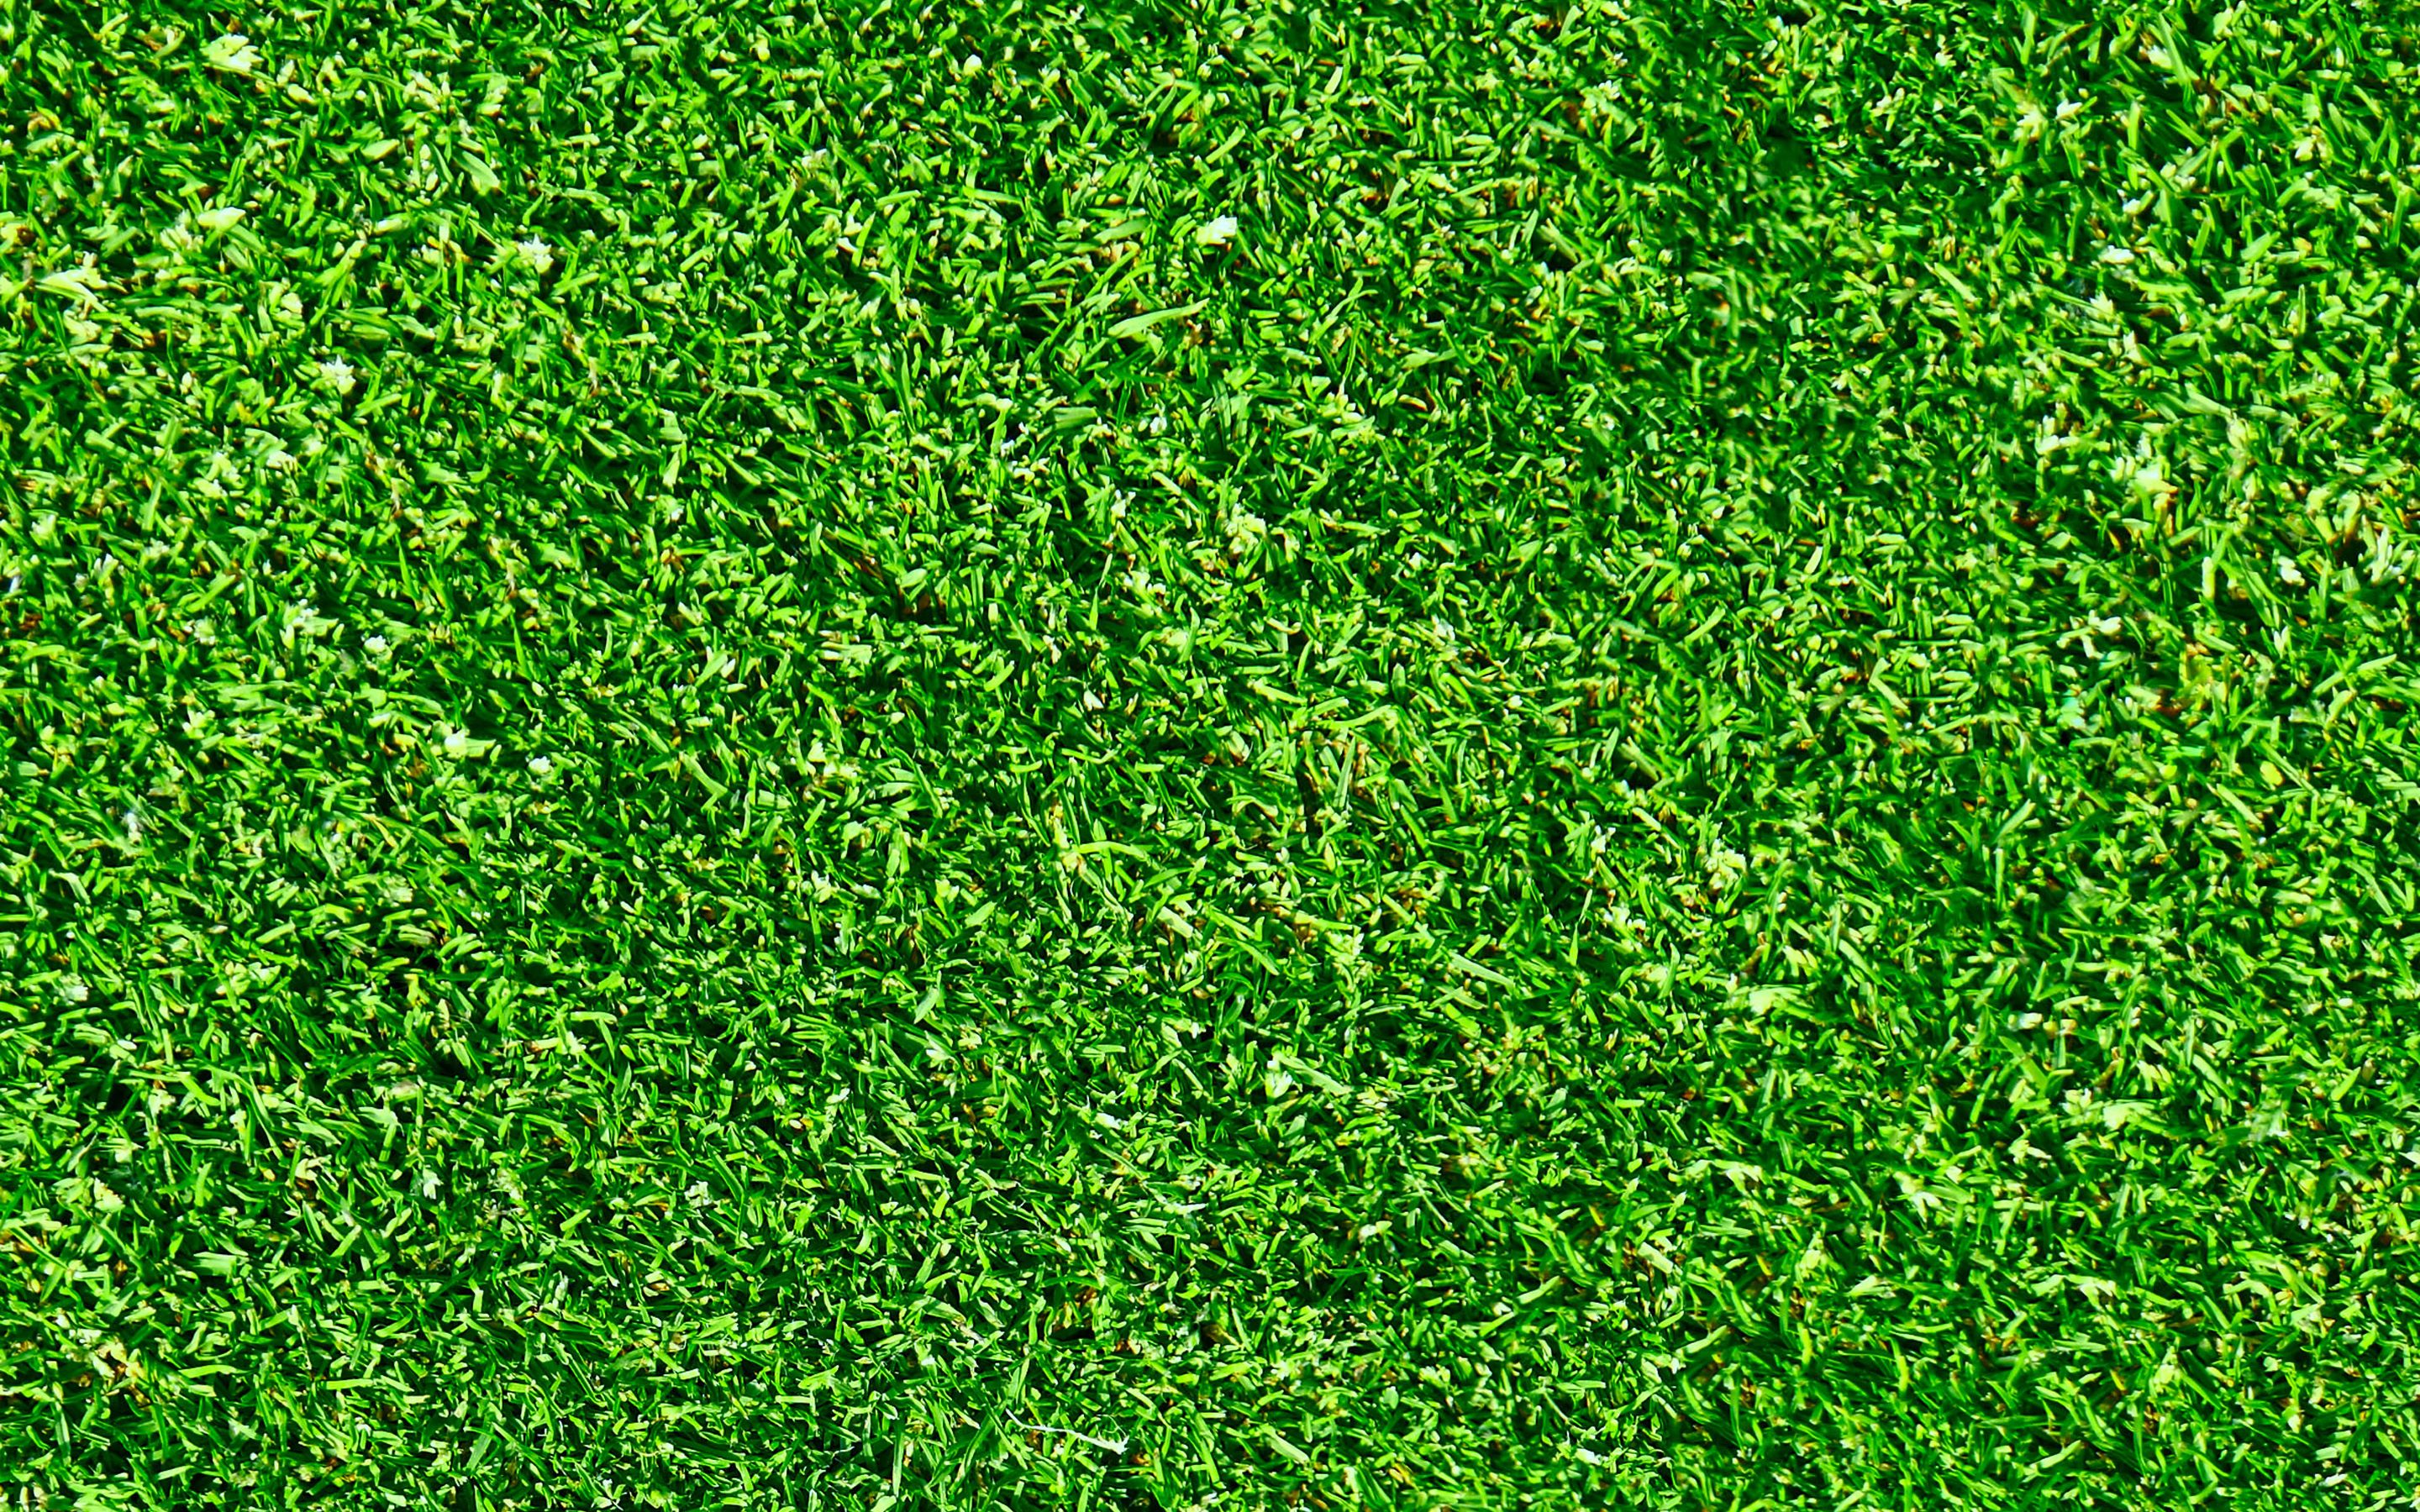 Download wallpaper green grass texture, green grass, beautiful grass, green grass background, natural textures for desktop with resolution 2880x1800. High Quality HD picture wallpaper